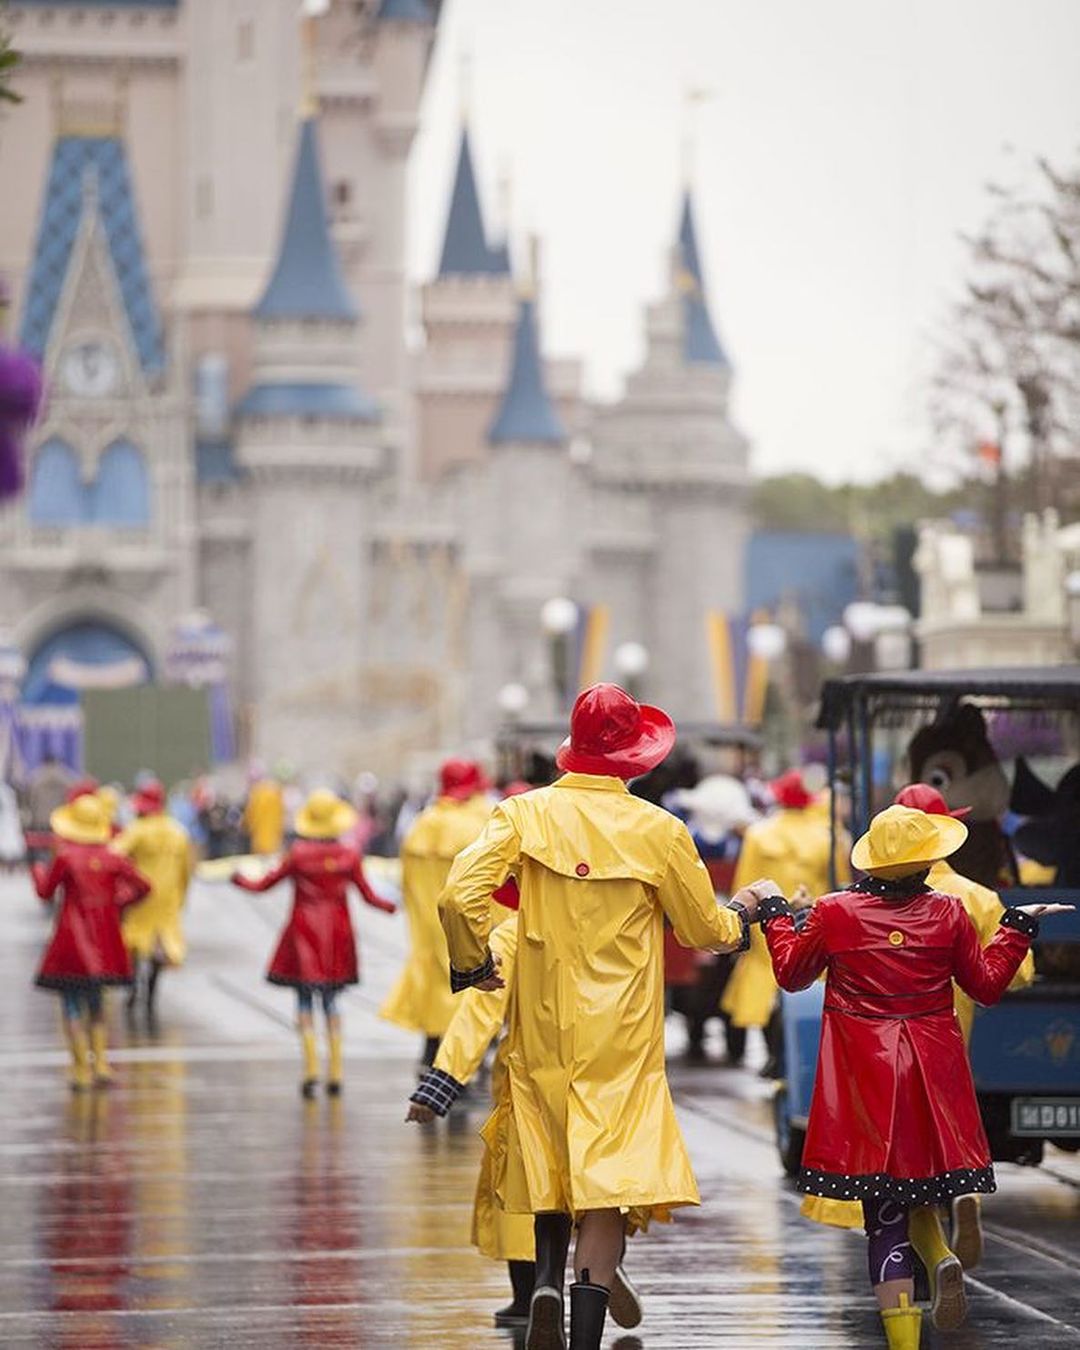 雨の魔法の王国-ディズニーとオーランドに行くのに最適な時期はいつですか